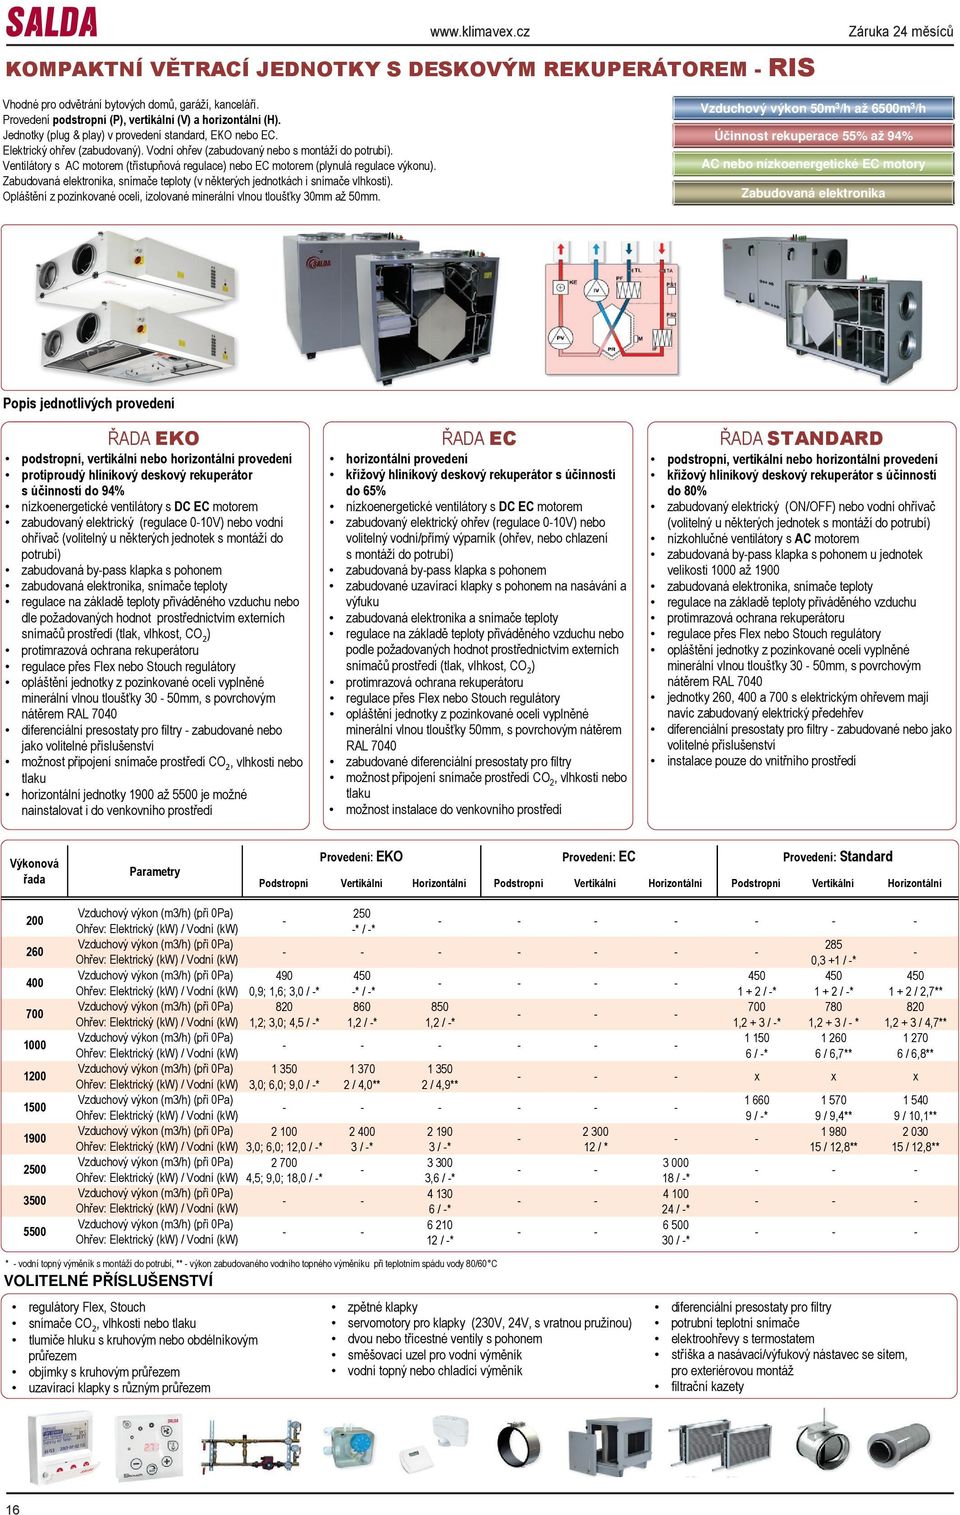 Ventilátory s AC motorem (třístupňová regulace) nebo EC motorem (plynulá regulace u). Zabudovaná elektronika, snímače teploty (v některých jednotkách i snímače vlhkosti).